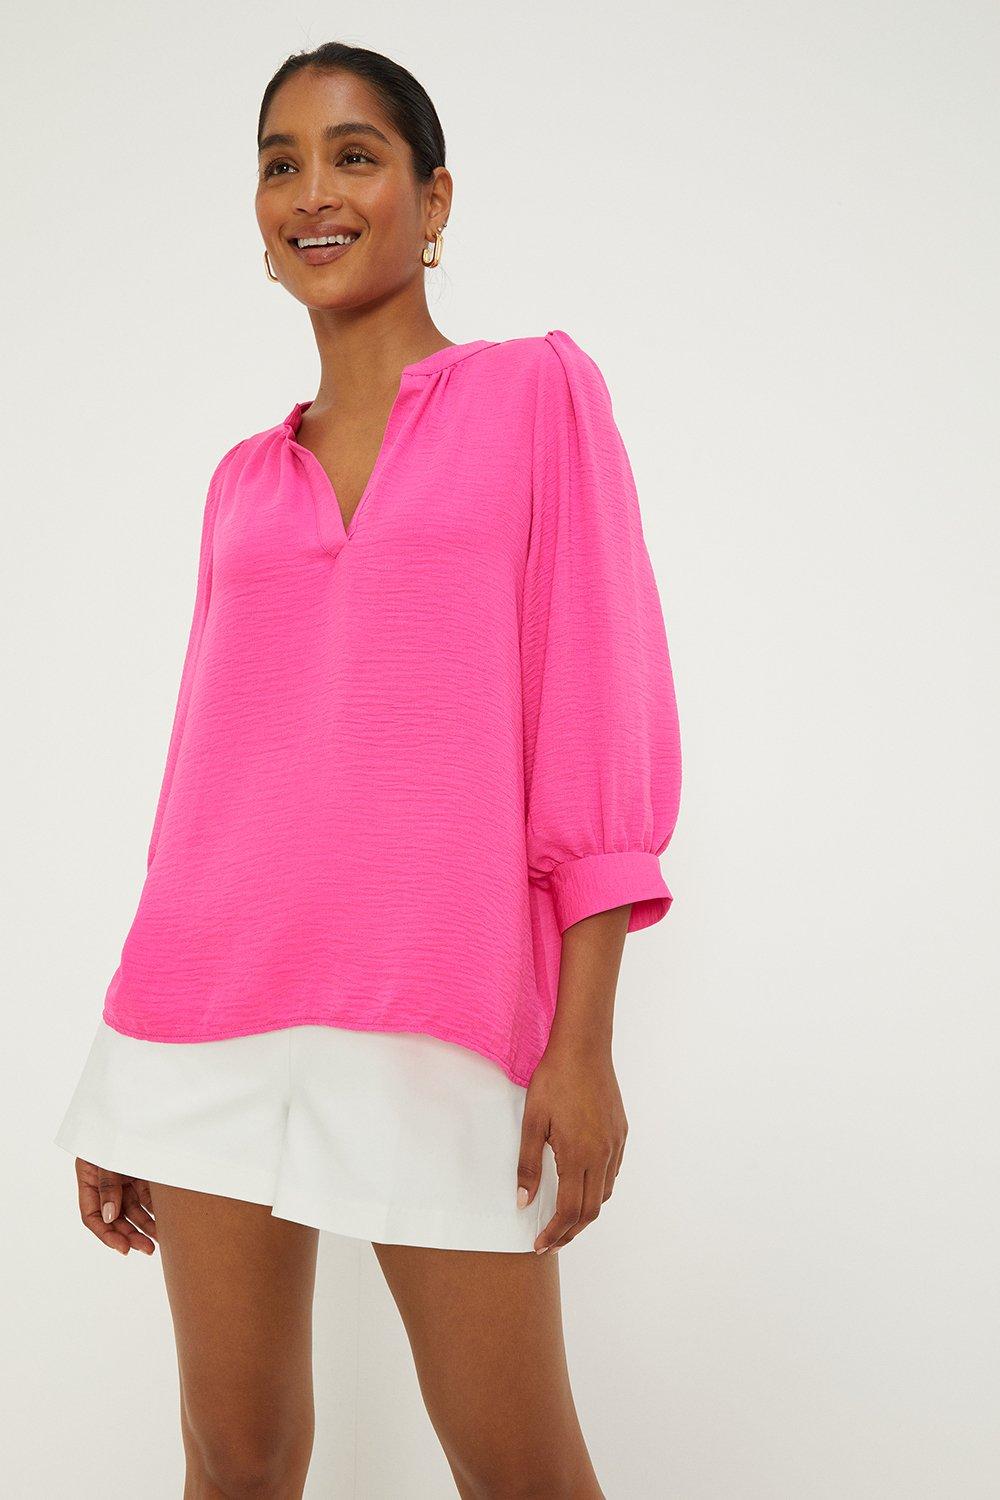 Women's Overhead Shirt - hot pink - 12